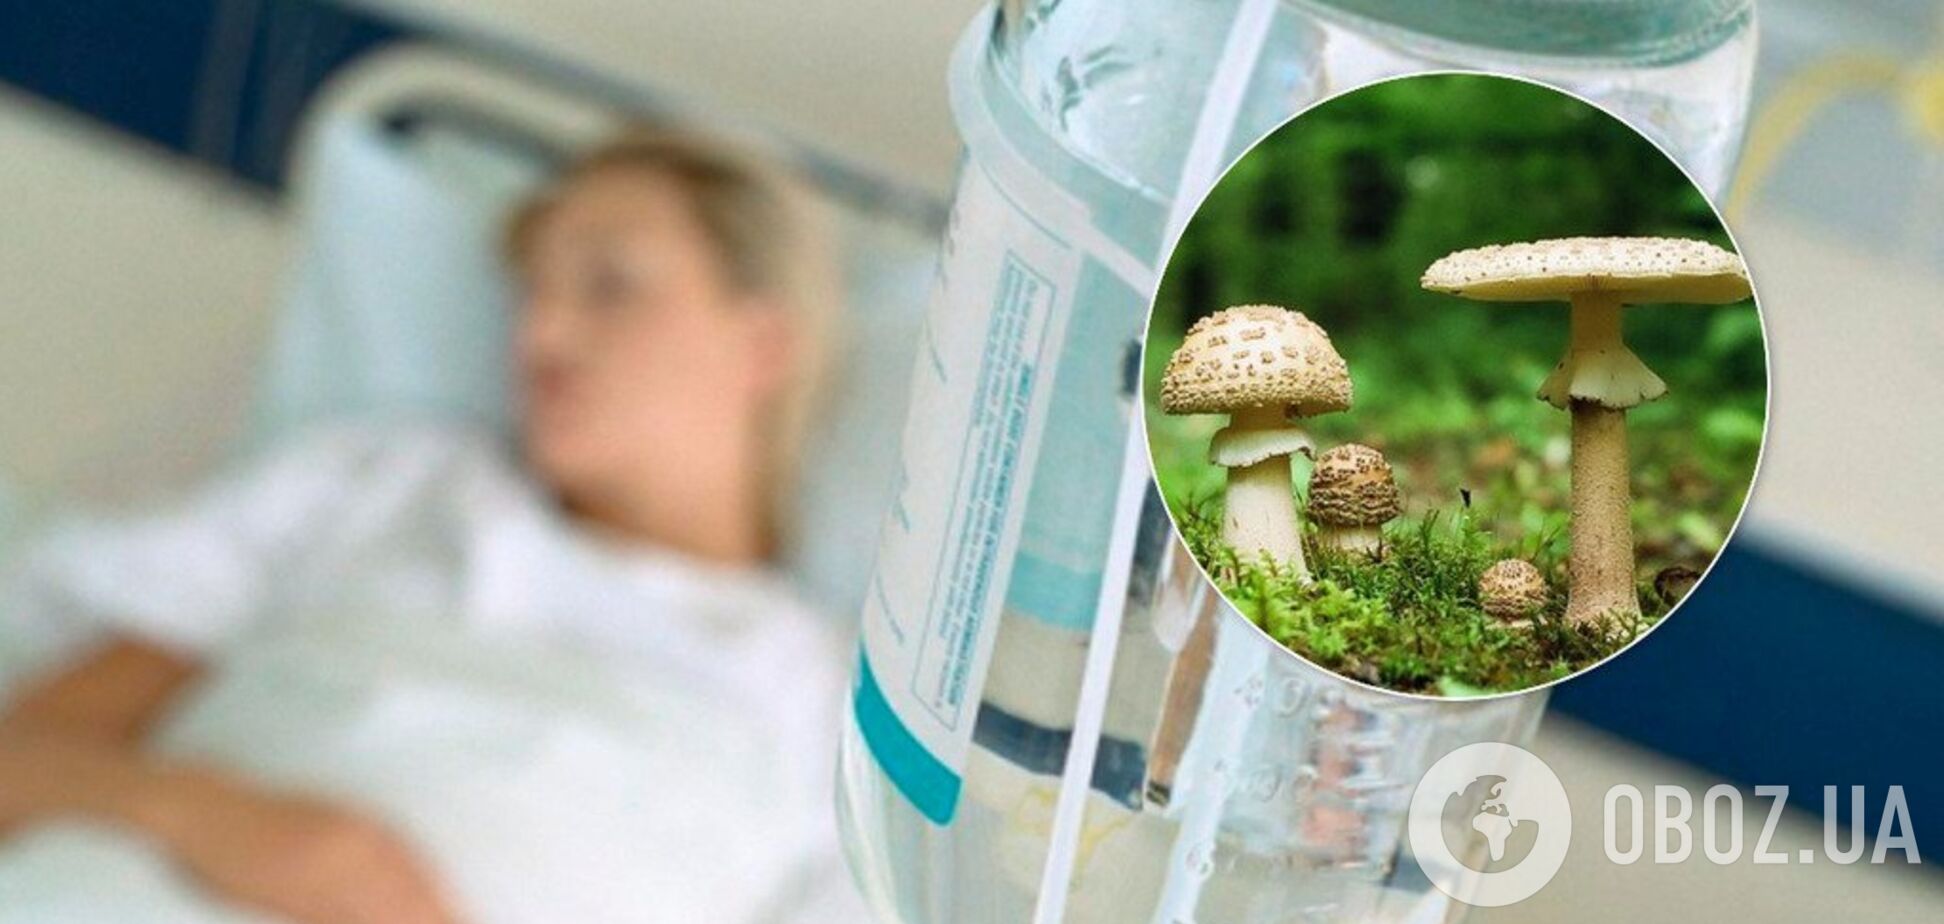 На Буковине случилось массовое отравление грибами